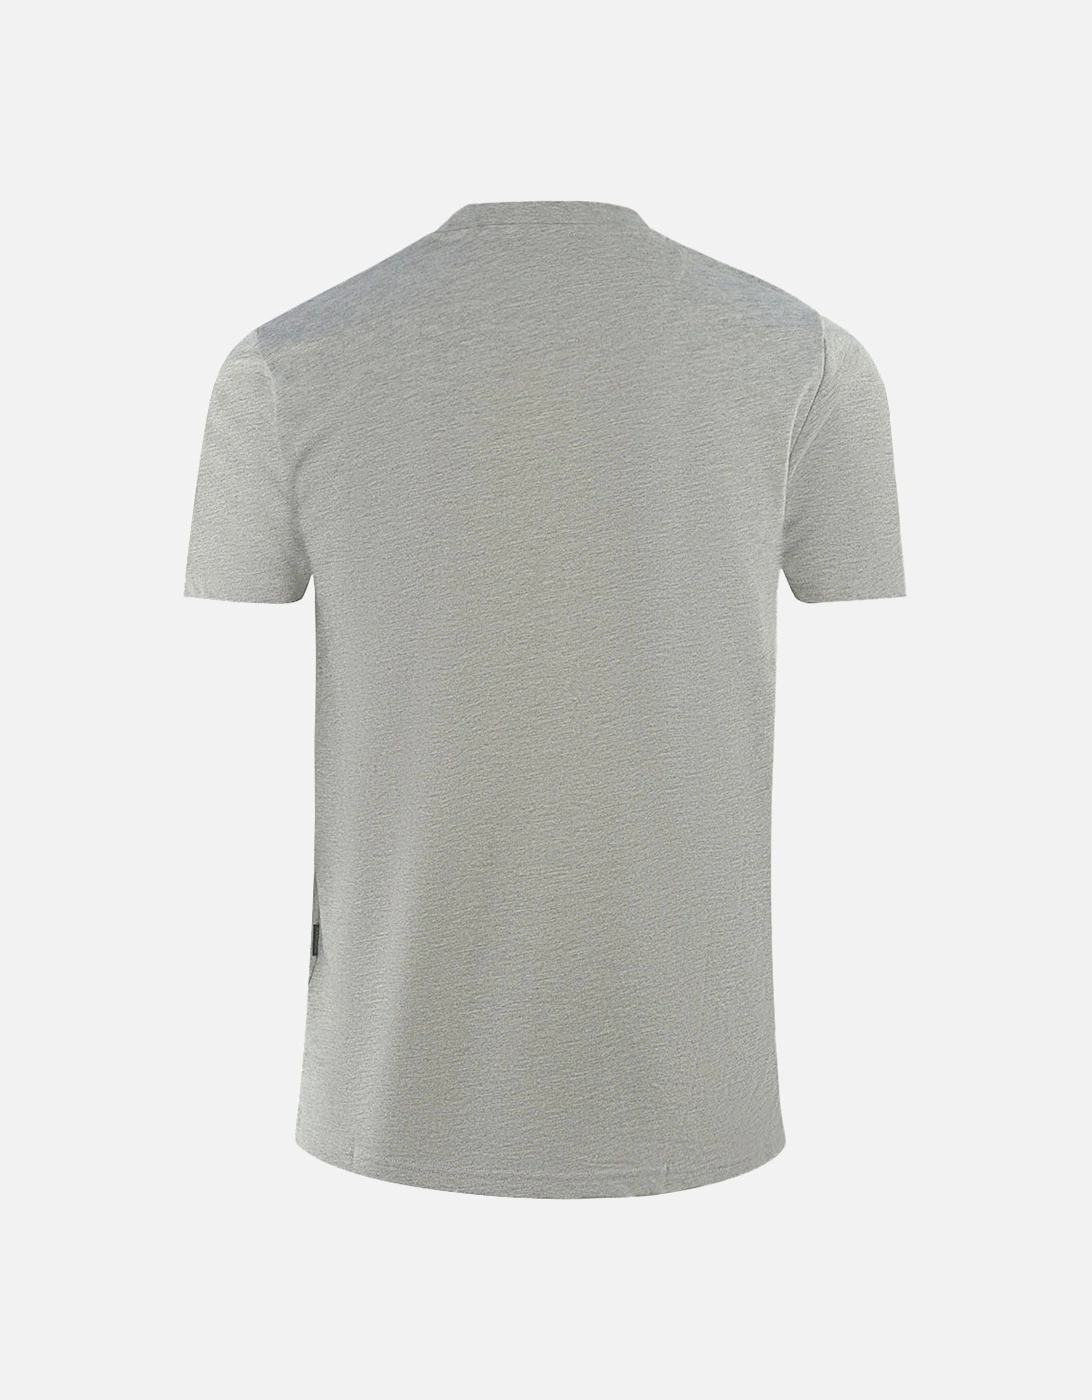 London Tonal Aldis Logo Grey T-Shirt